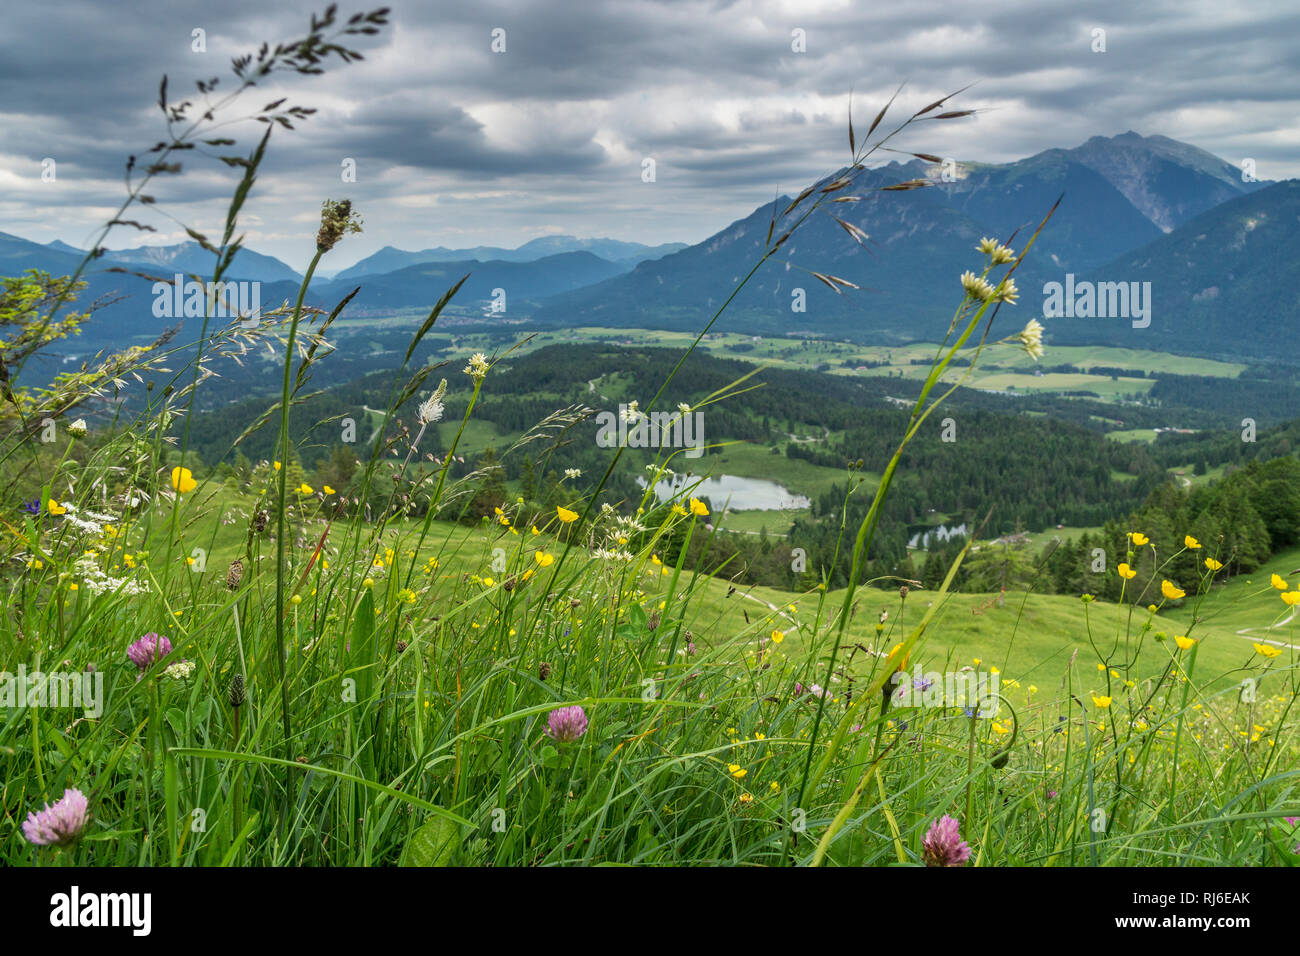 Deutschland, Bayern, Bayerische Alpen, Mittenwald, Blick vom Kranzberg auf die Alpenwelt Karwendel Stock Photo